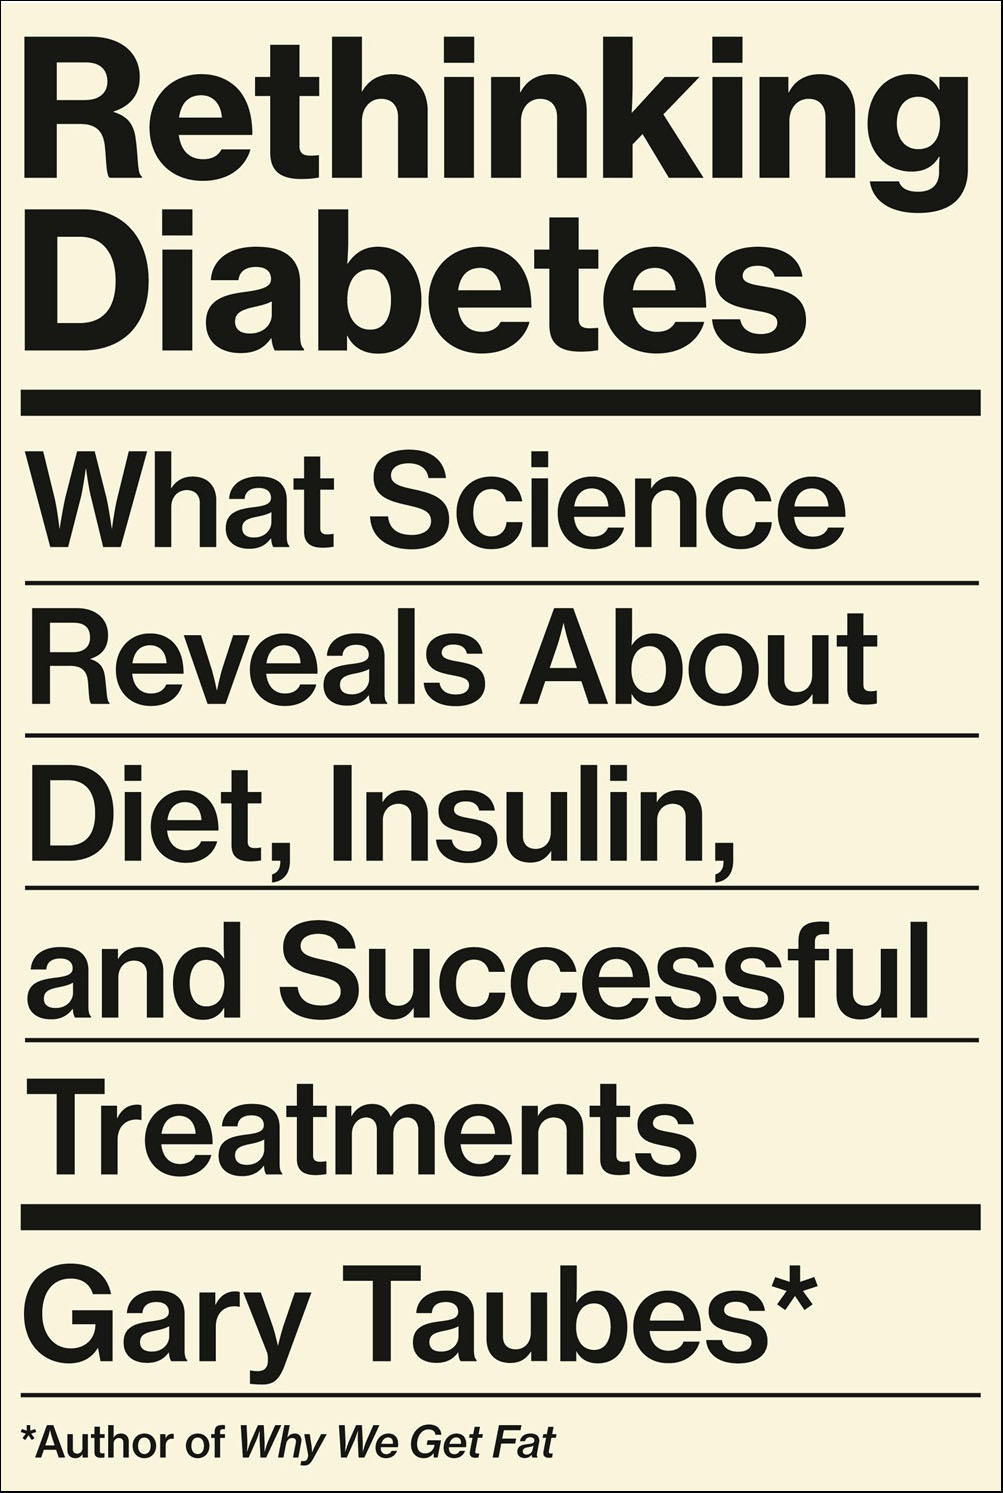 RethinkingDiabetes